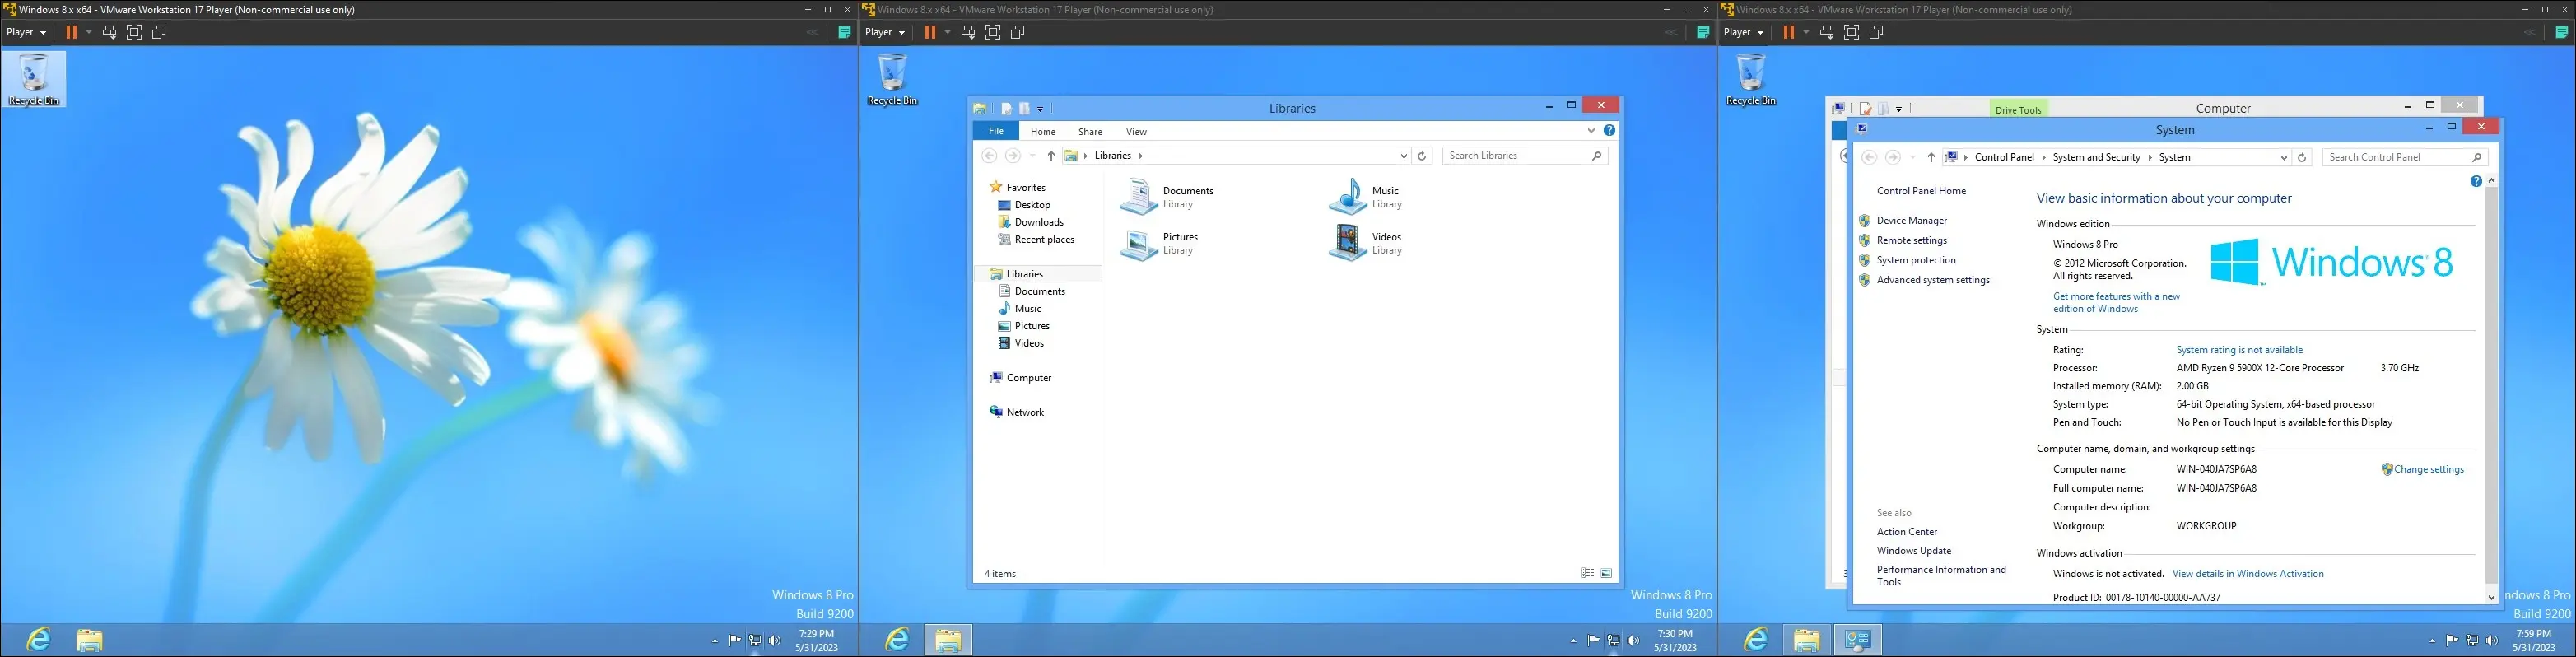 仮想マシン上の Windows 8 の画像。デスクトップ、エクスプローラー インターフェイス、および「コンピューターについて」ページが表示されています。